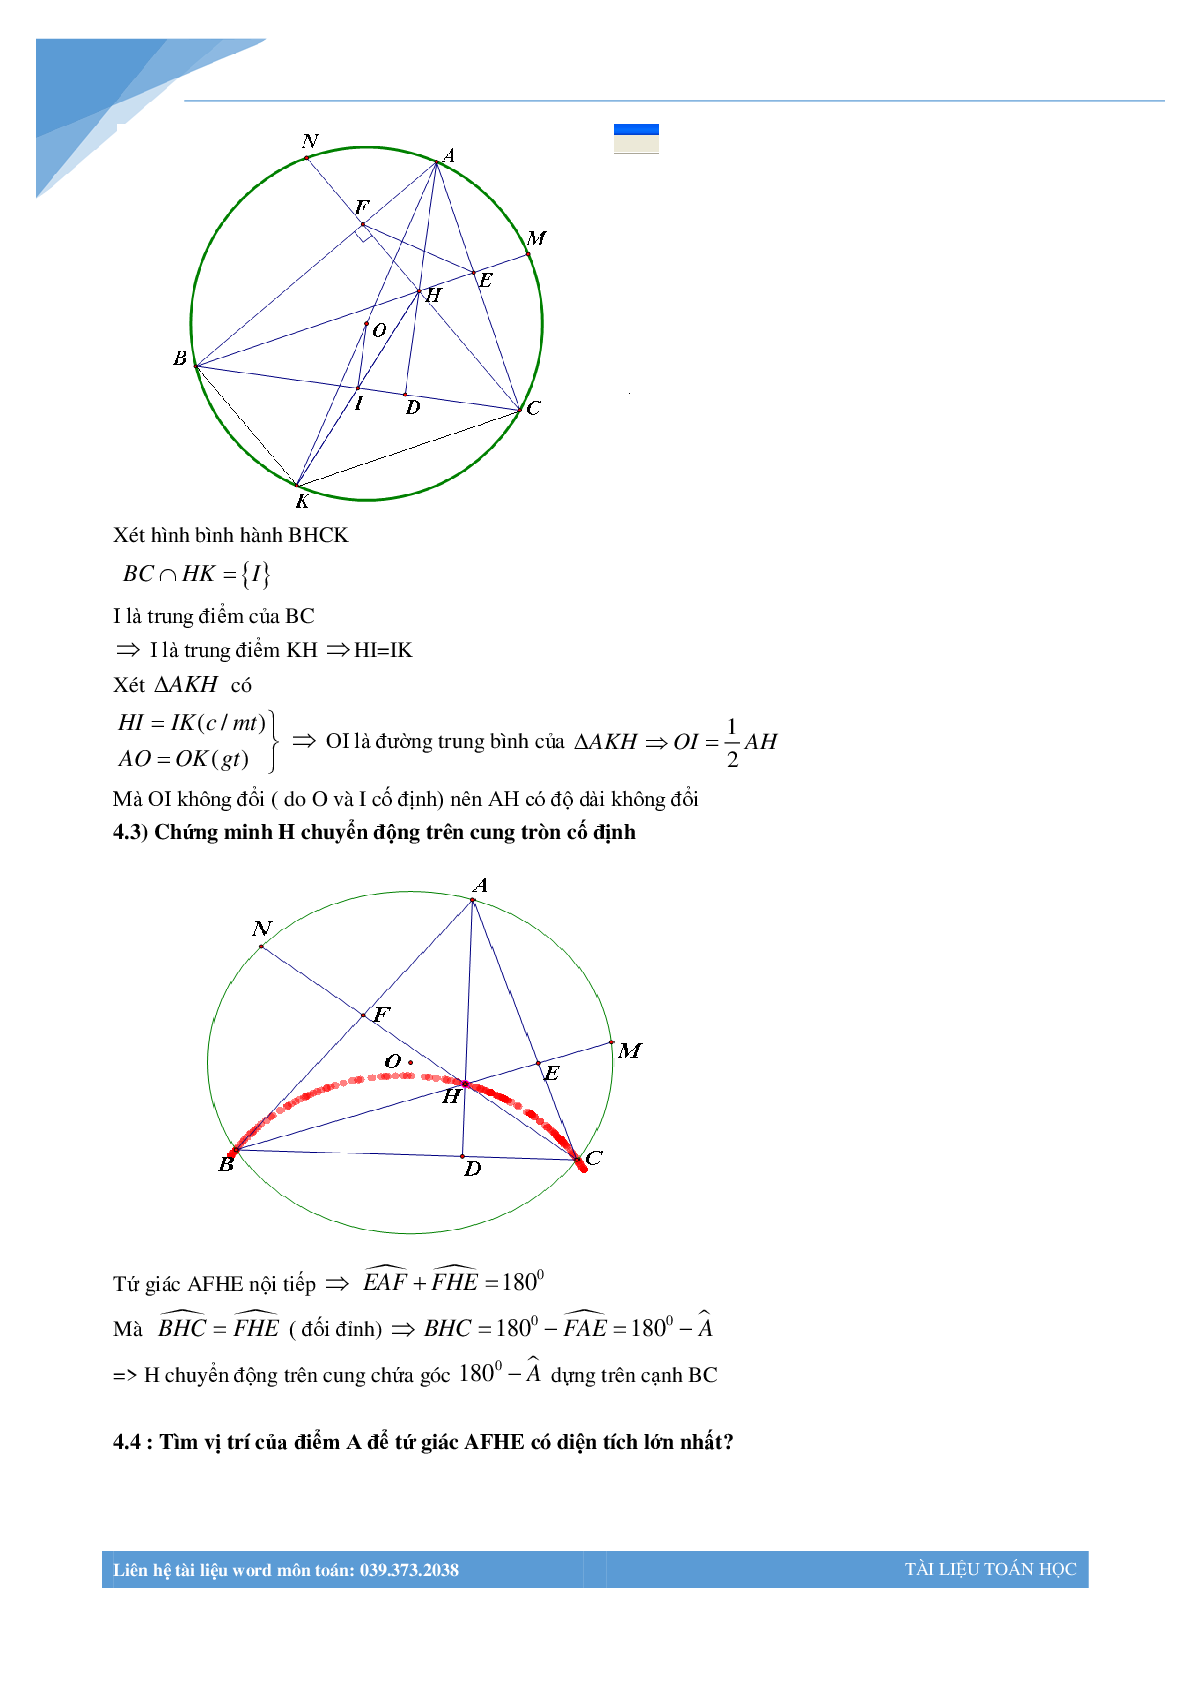 Chùm bài toán hình học luyện thi vào lớp 10 (trang 8)